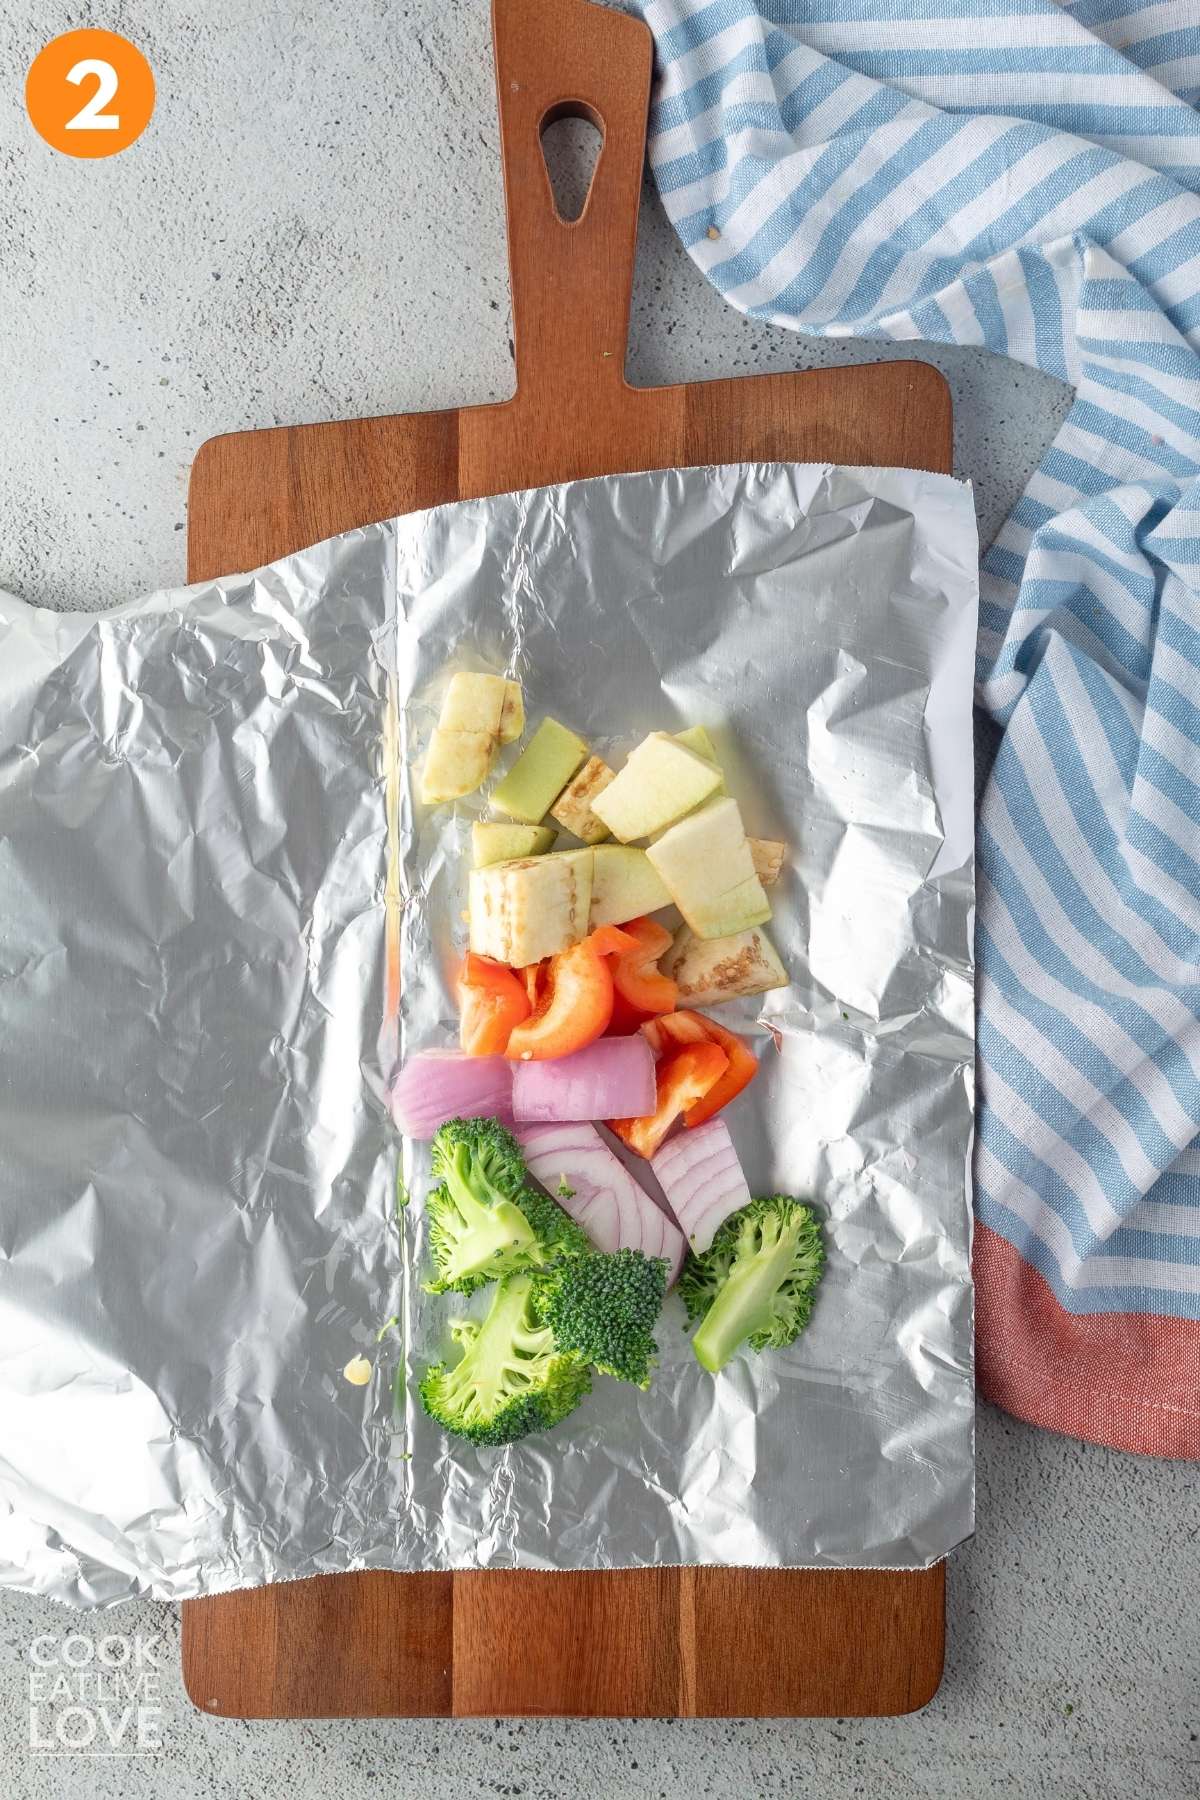 Vegetables on top of foil.